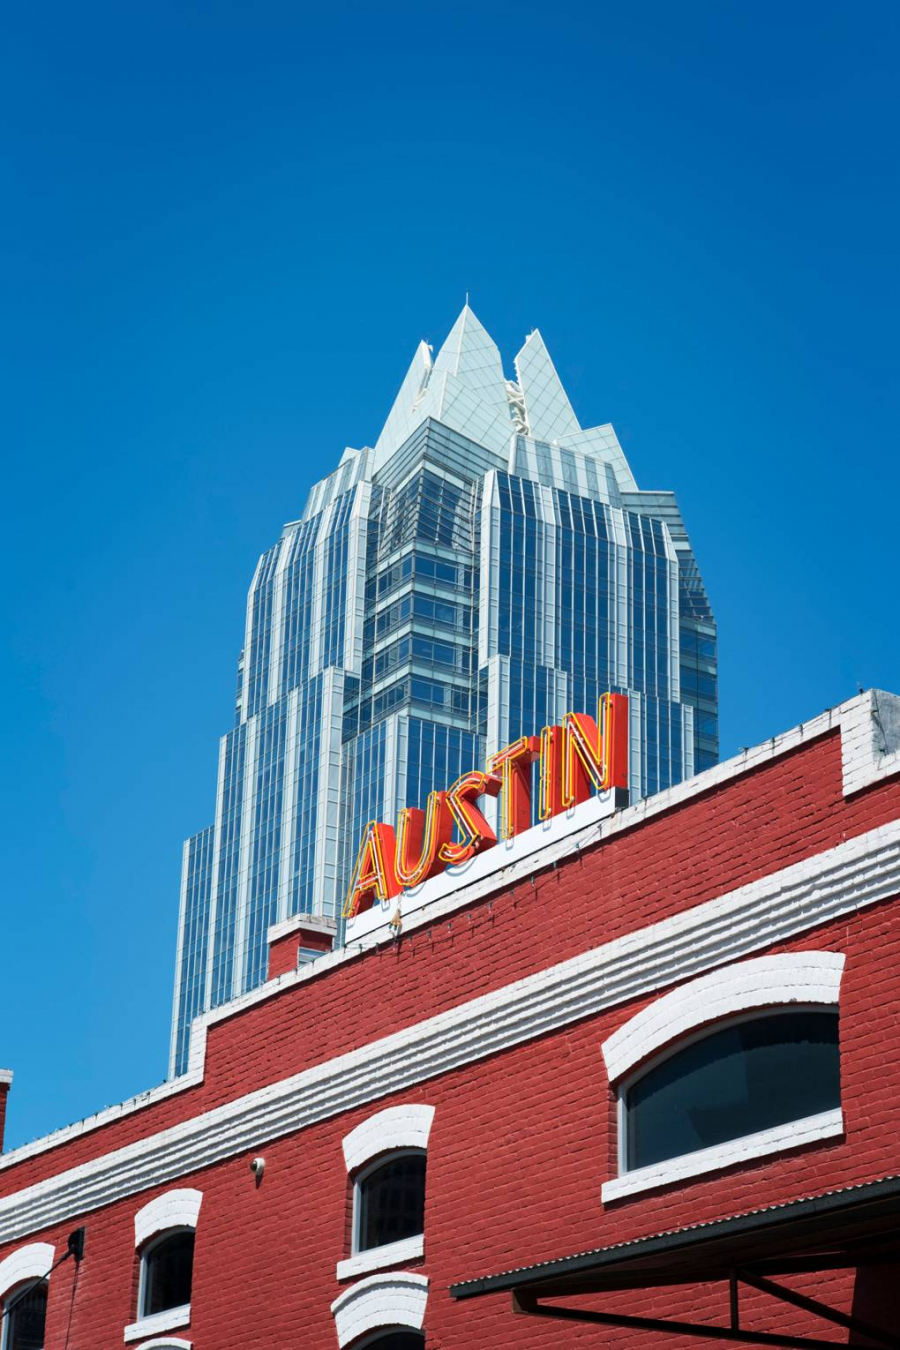 Austin chuẩn bị xuất hiện một khu phố sáng tạo mới ở phía Đông thành phố